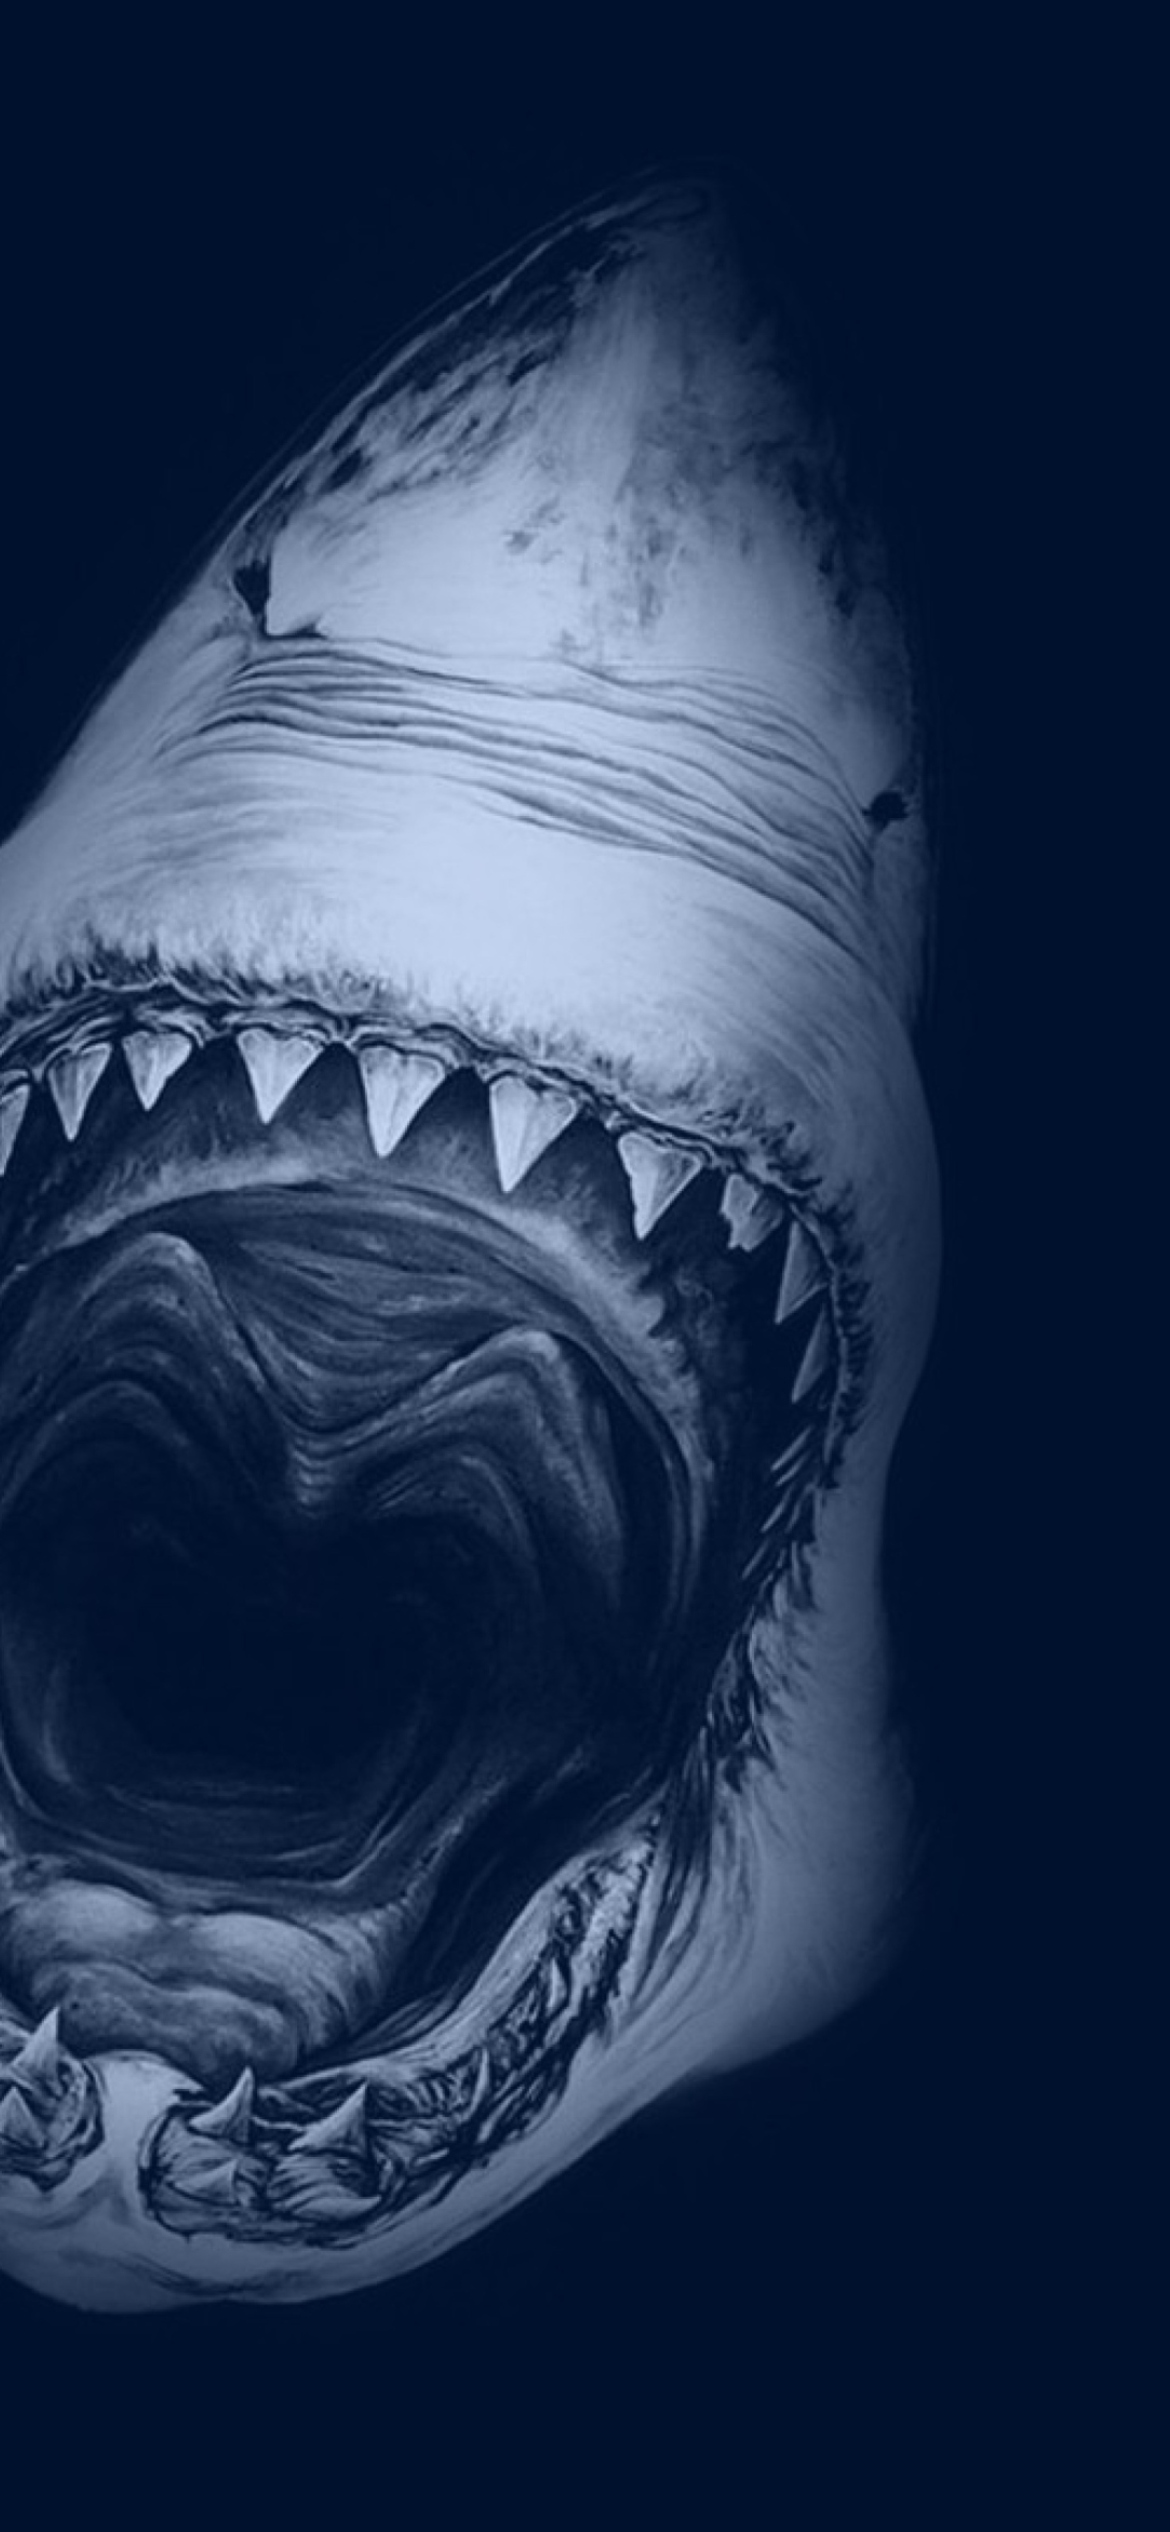 Huge Toothy Shark wallpaper 1170x2532